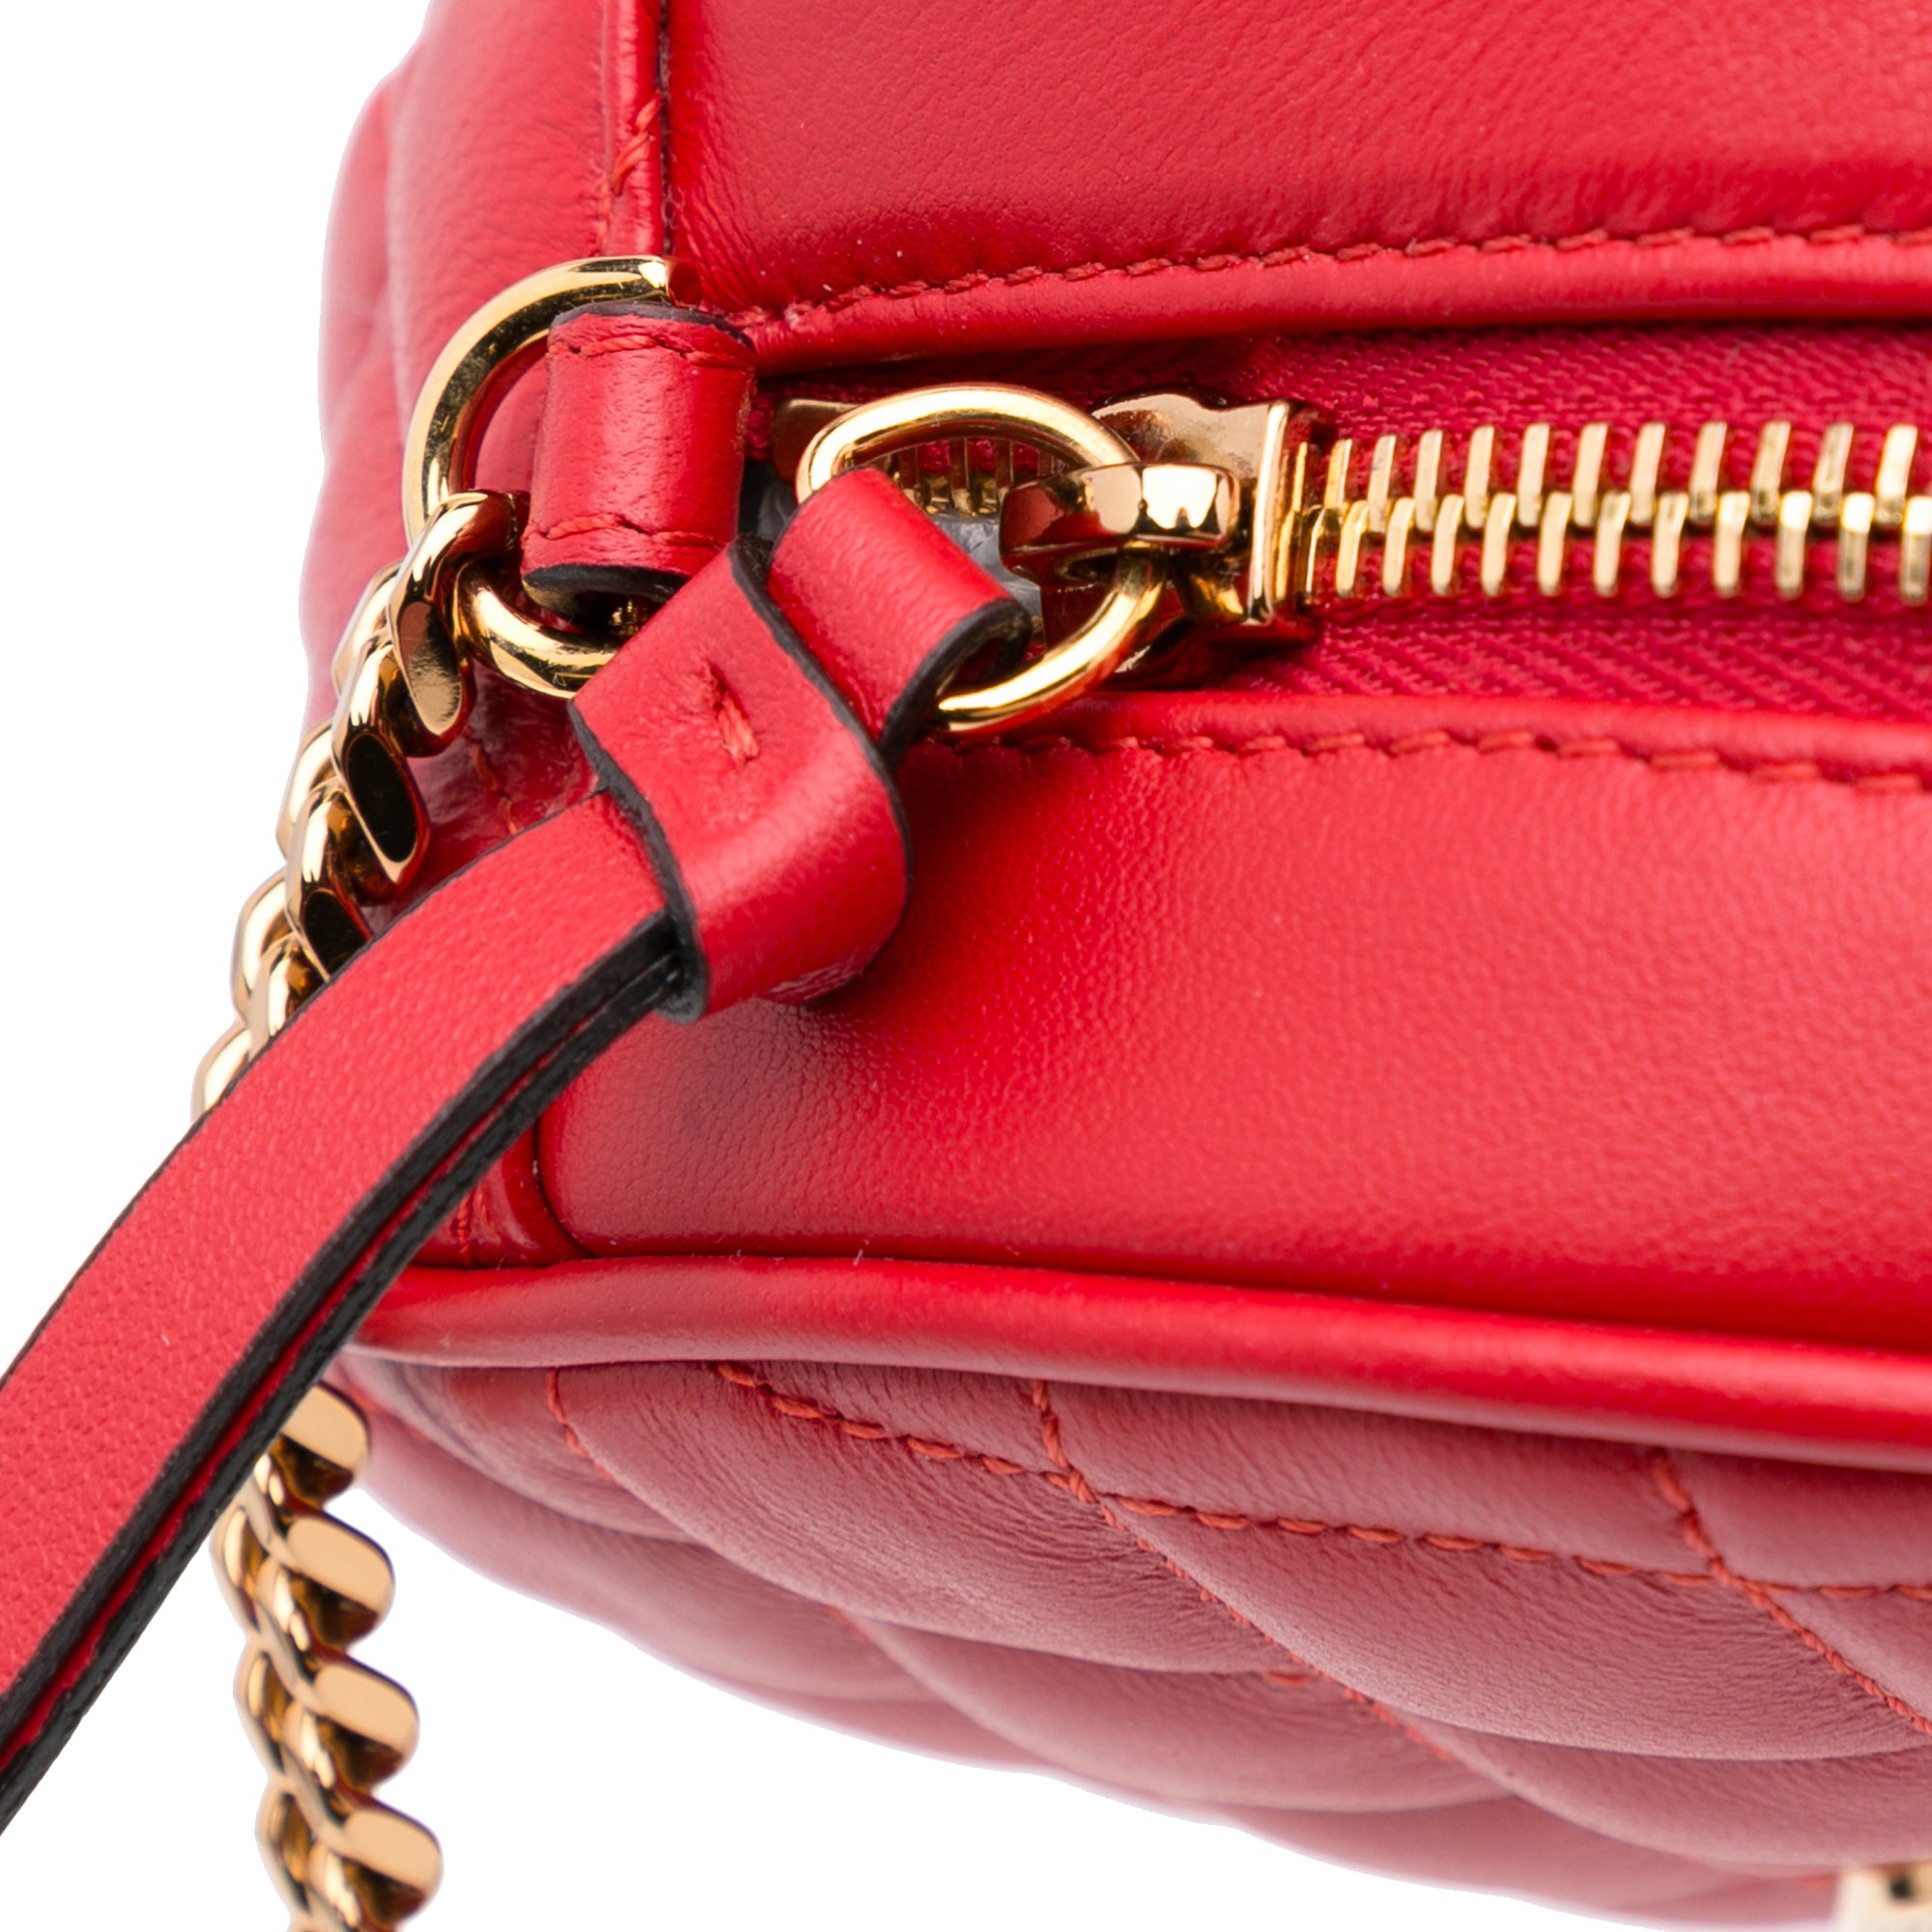 Red Versace Quilted Round La Medusa Camera Bag – Designer Revival